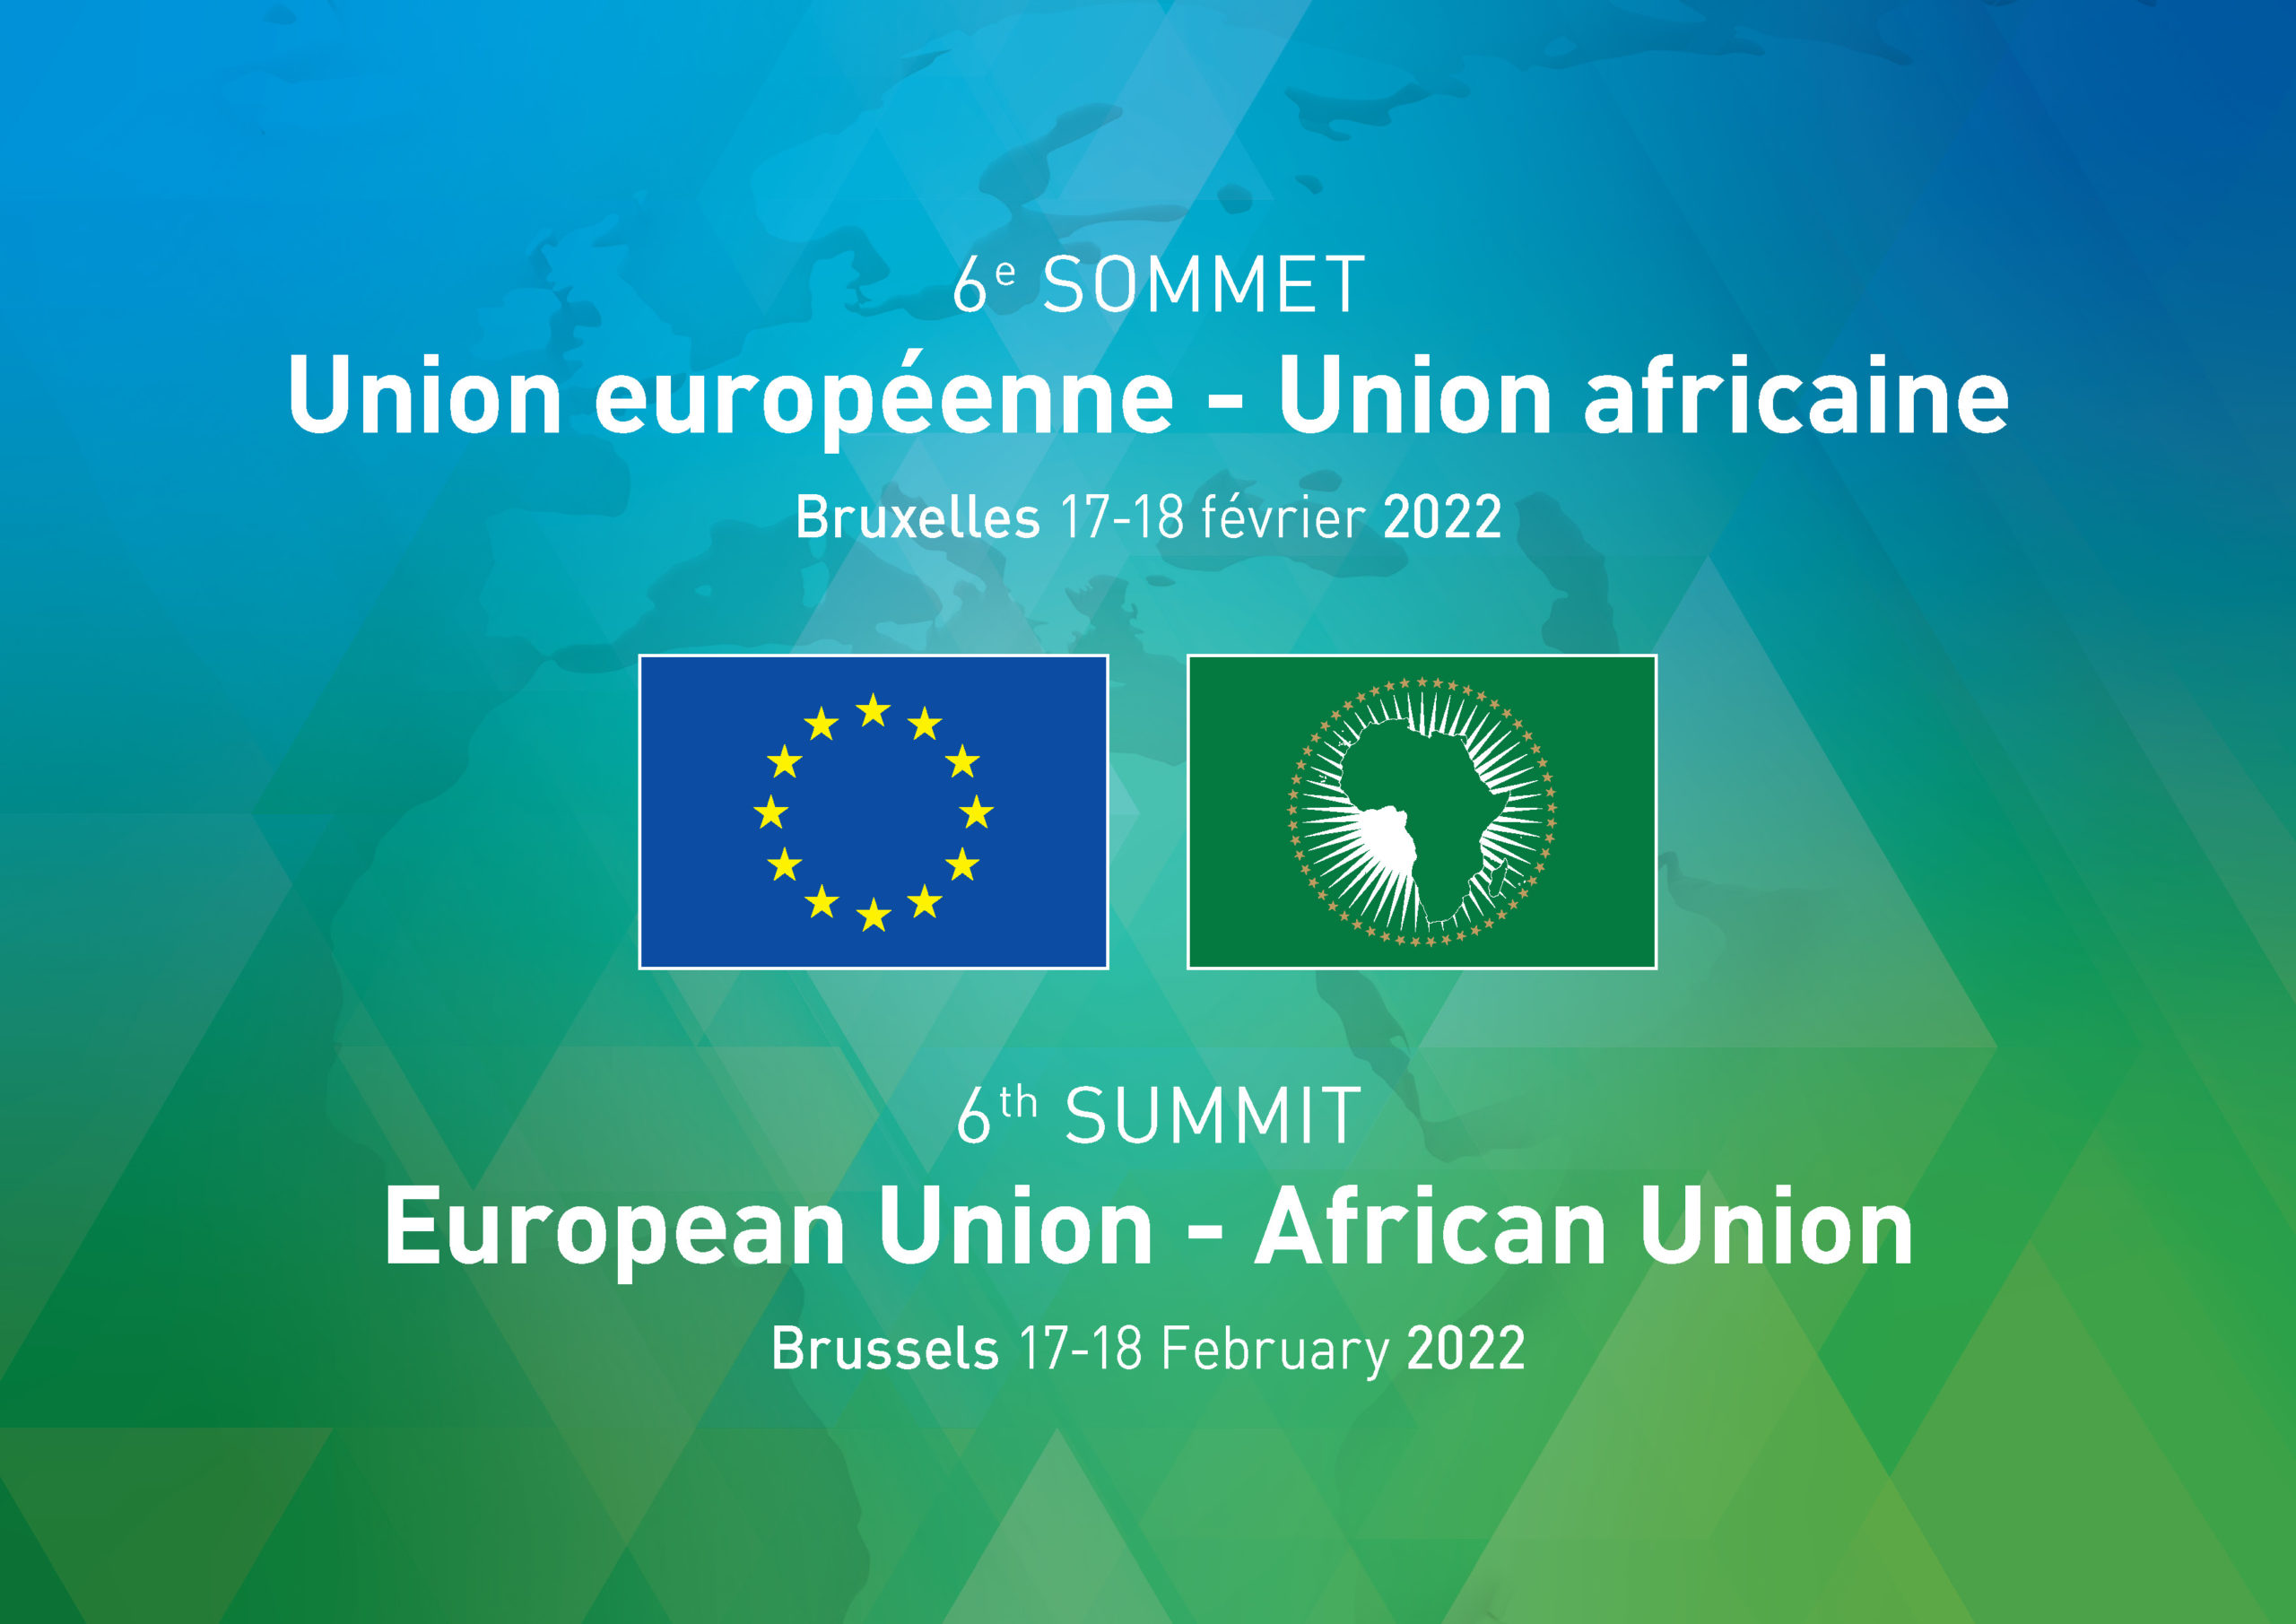 Sixième sommet Union européenne ‑ Union africaine: les participants